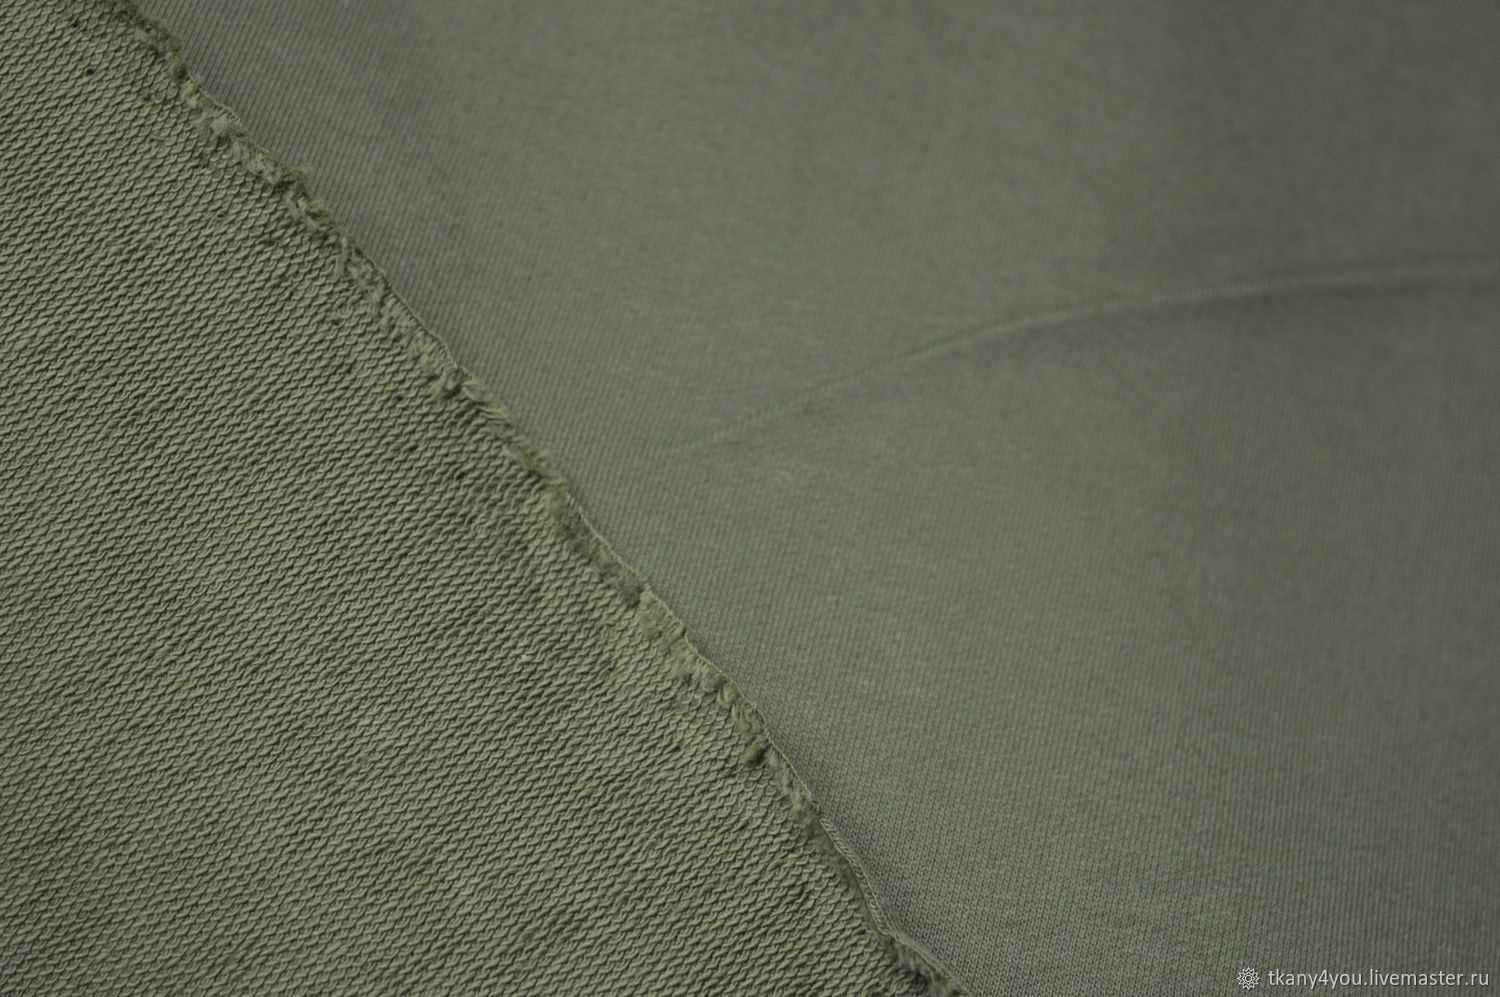 Футер 2 х нитка: что за ткань, ее особенности, преимущества art-textil.ru